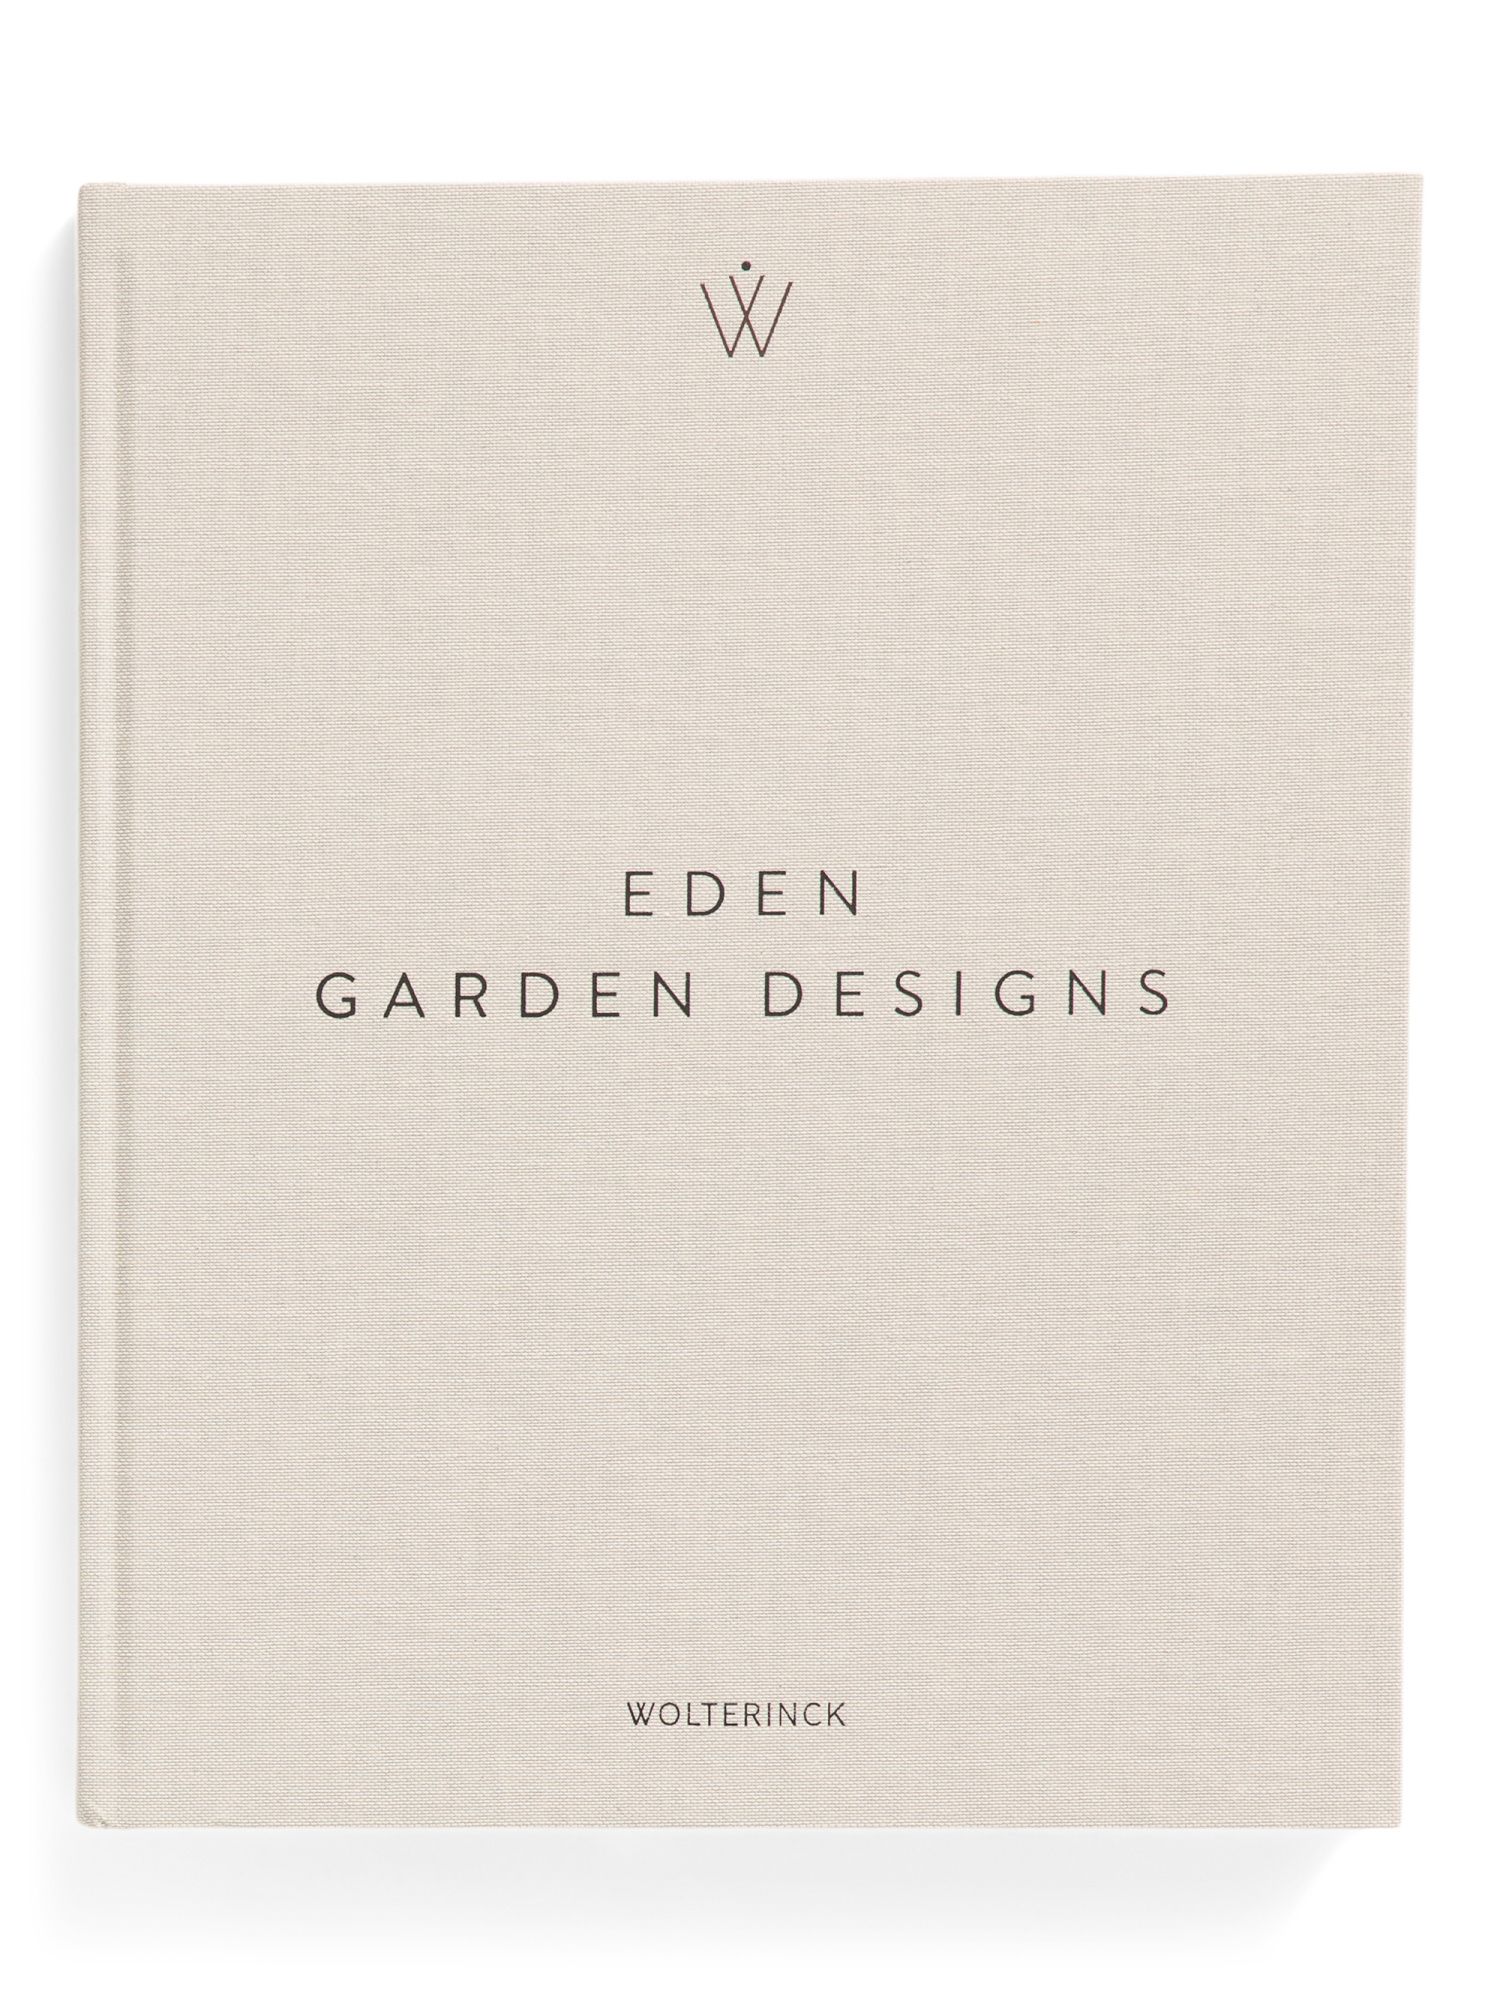 Eden Garden Designs Book | TJ Maxx